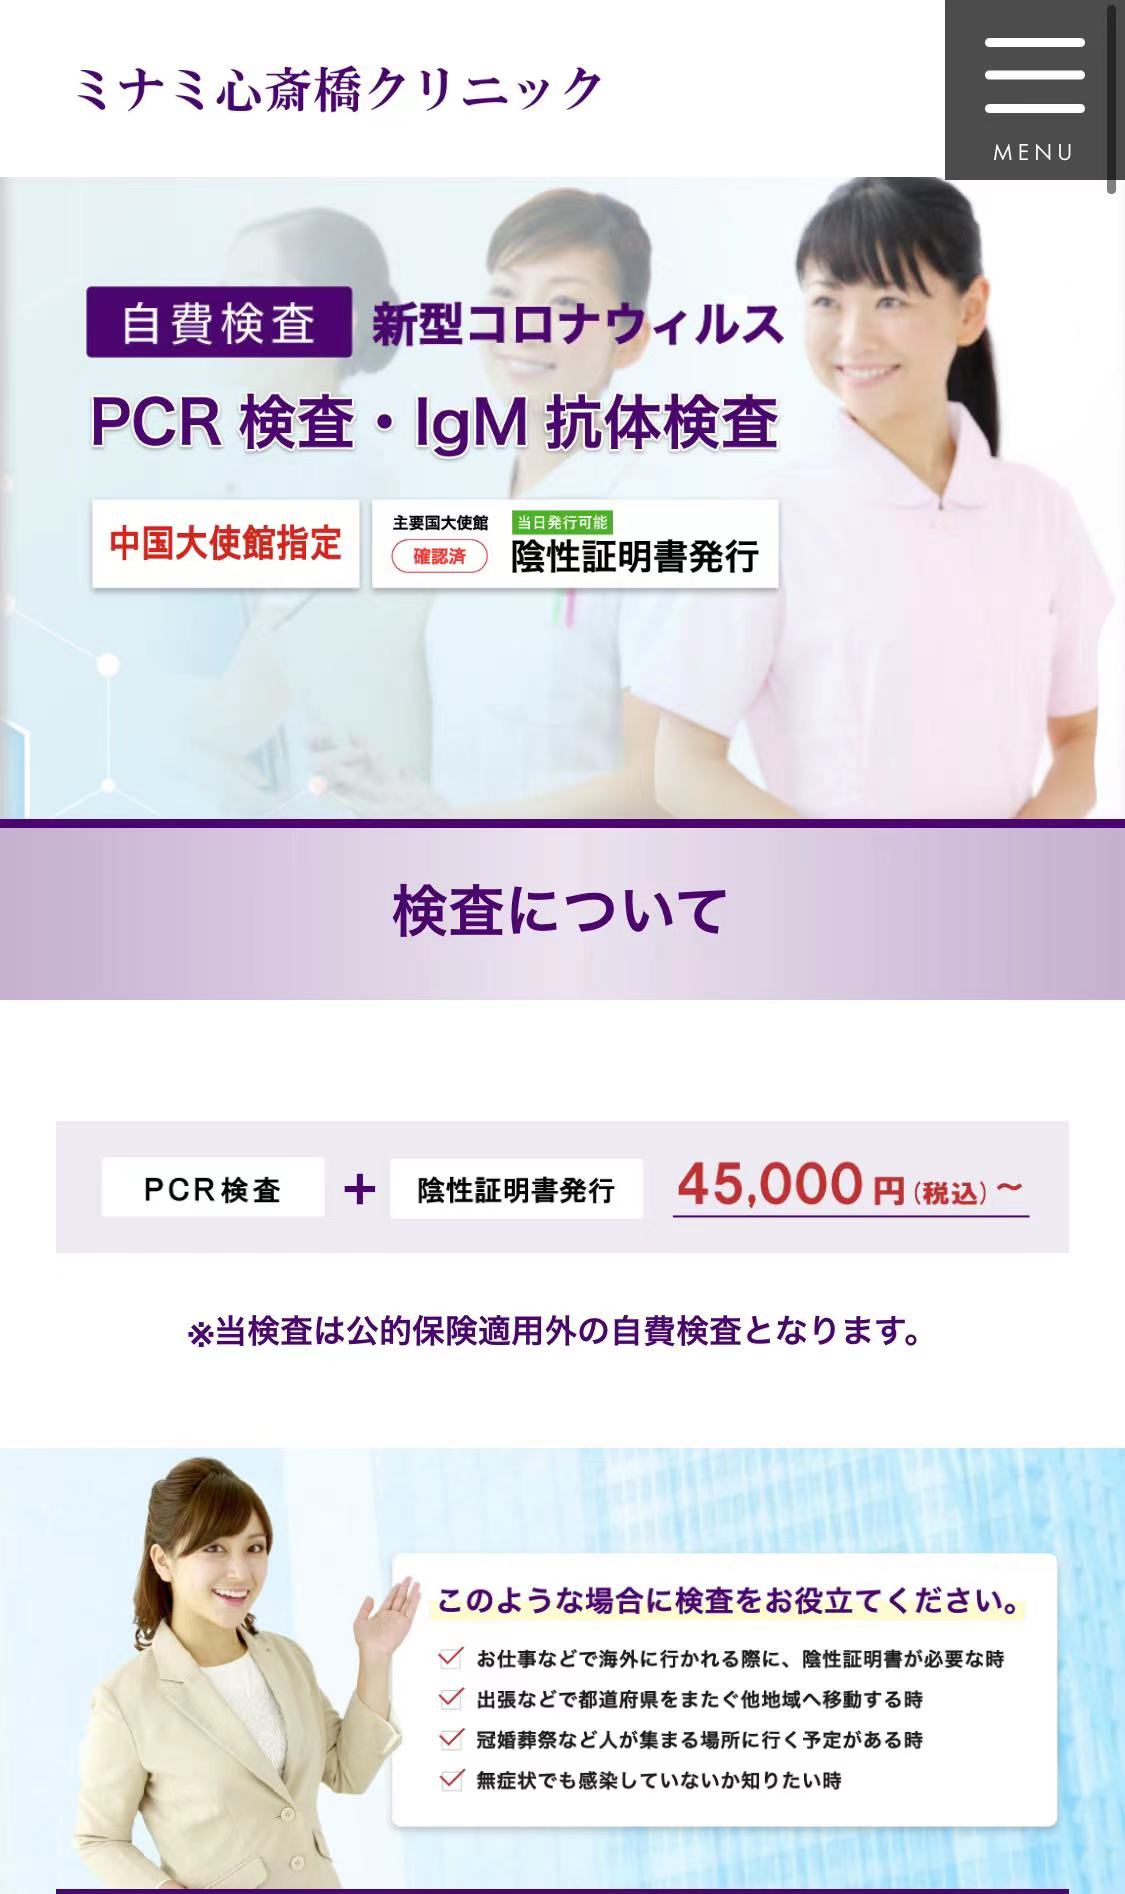 中国へ渡航するためには PCR検査とIgM抗体検査施設が大阪市内中心部にも有る